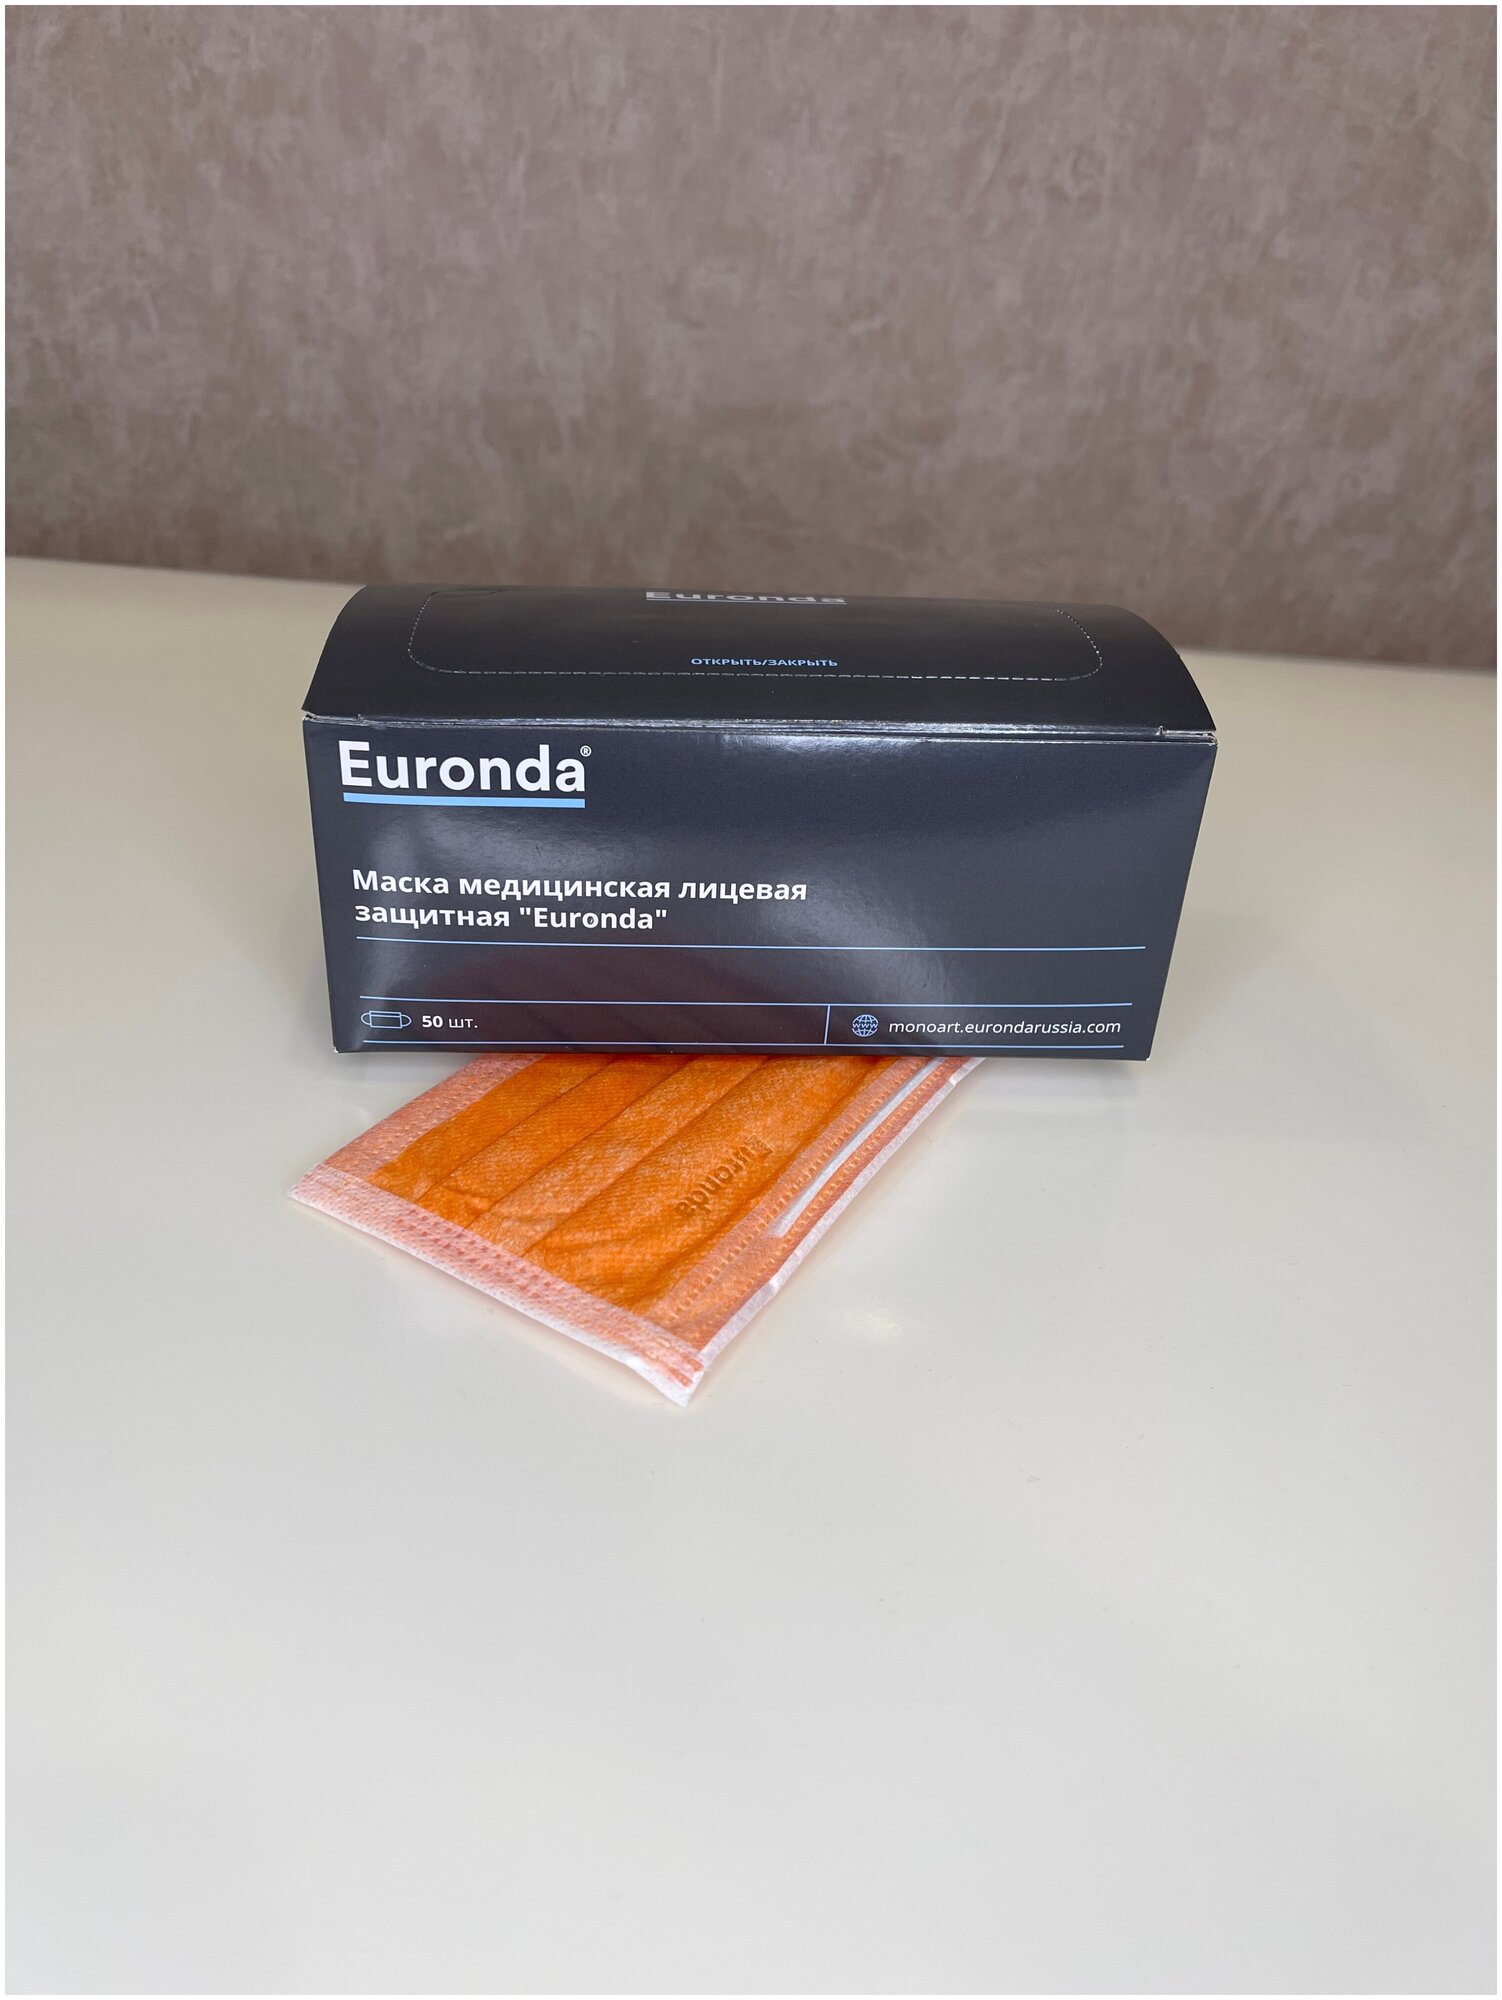 Маска медицинская Euronda ( Еуронда / Евронда ) Monoart трехслойная - оранжевый, 50 шт. в упаковке